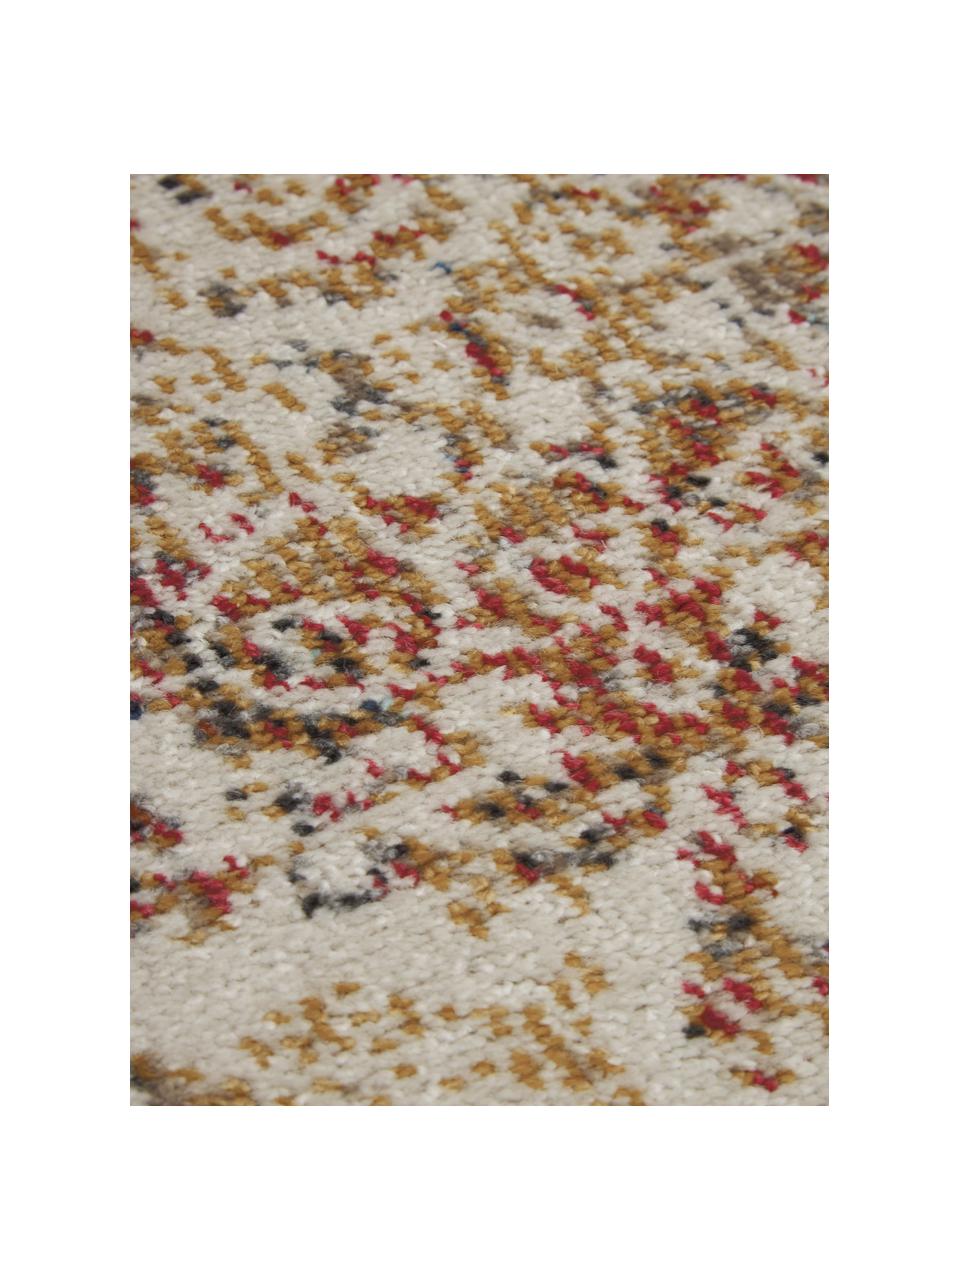 Runder In- & Outdoor-Teppich Dana im Vintage Style in Mehrfarbig, 100% Polypropylen, Mehrfarbig, Ø 120 cm (Grösse S)